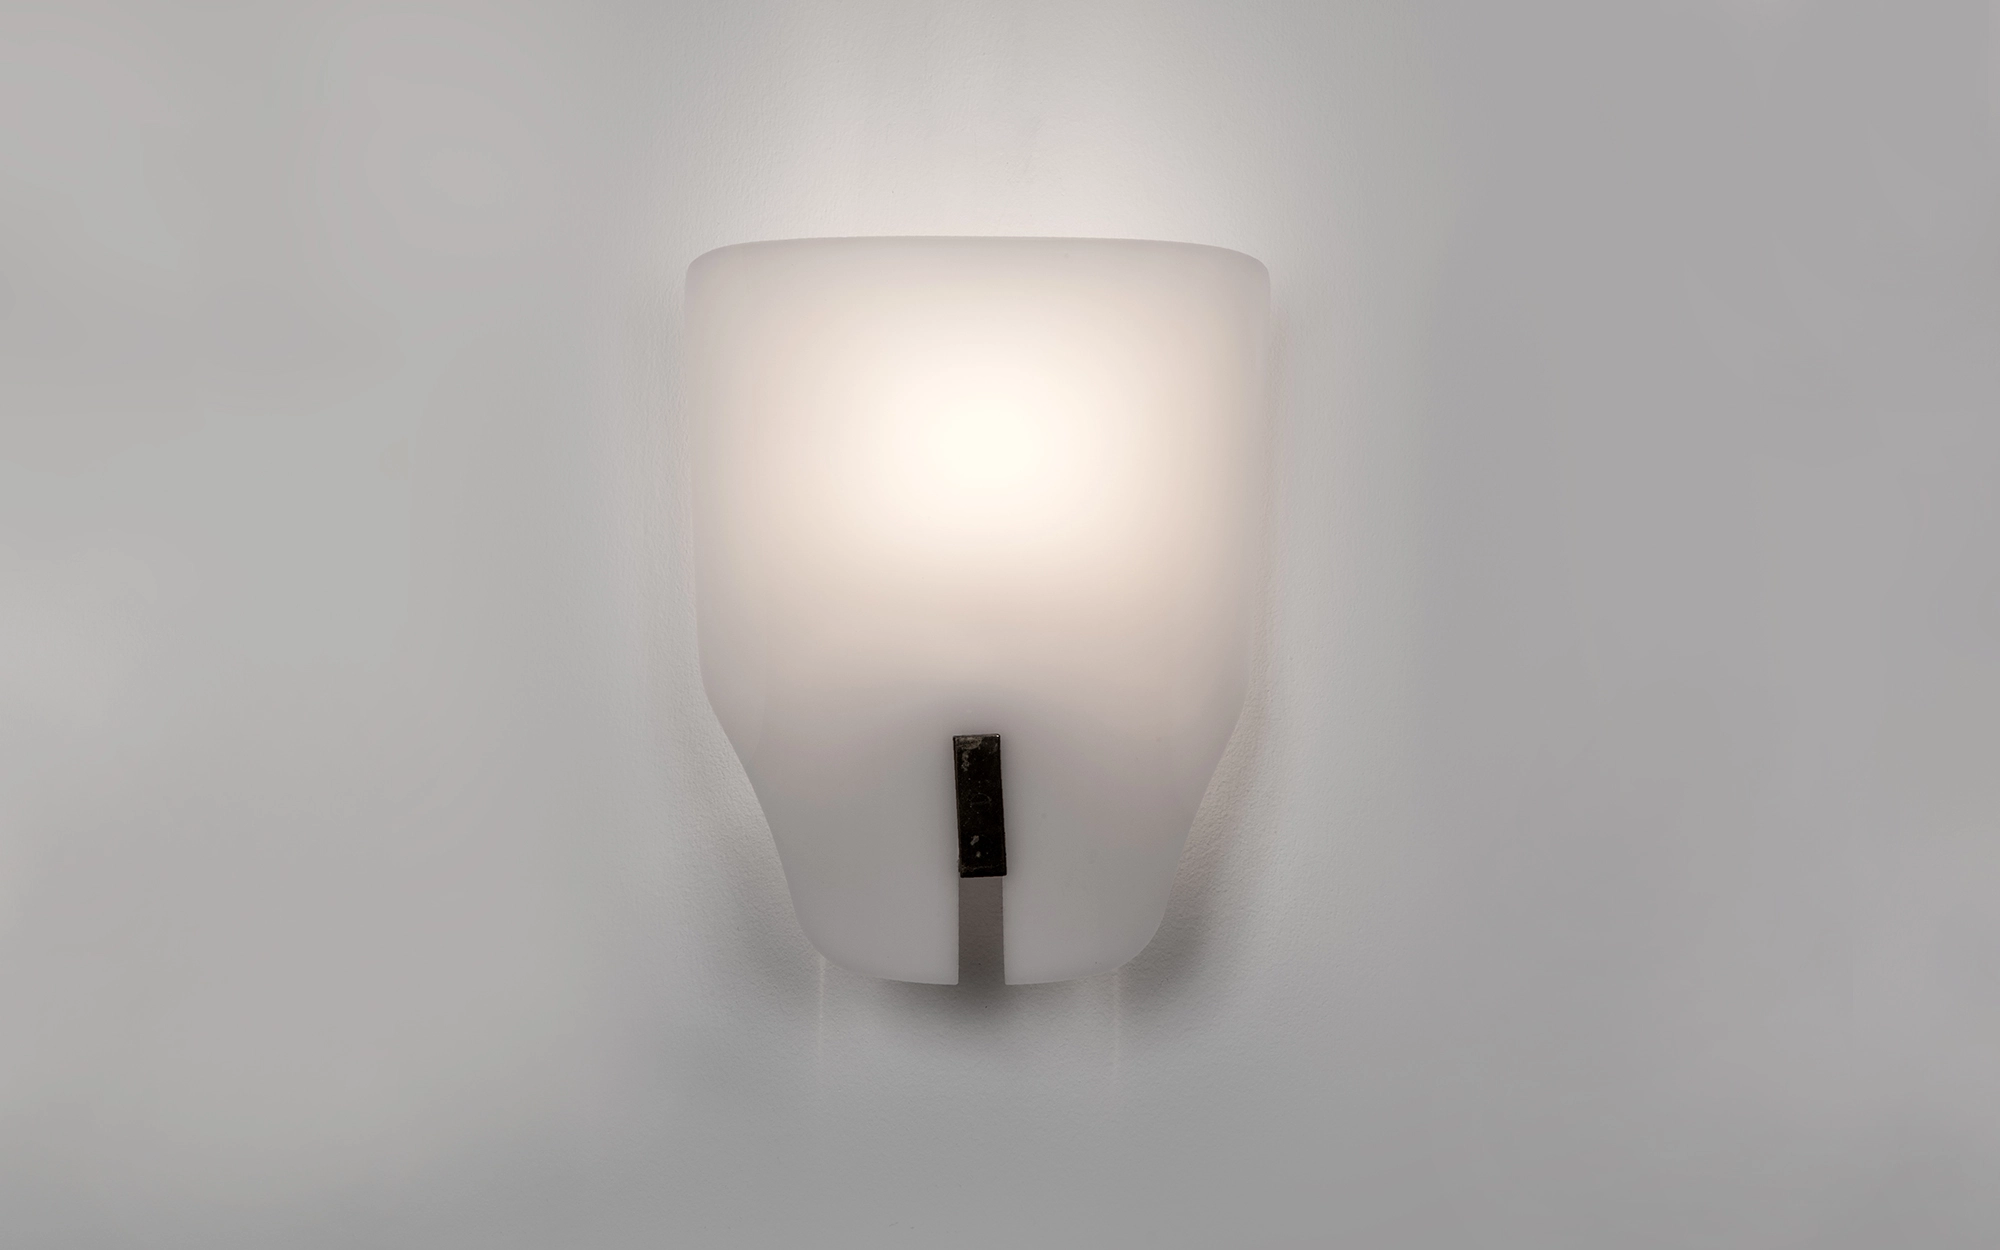 167px - Gino Sarfatti - Pendant light - Galerie kreo